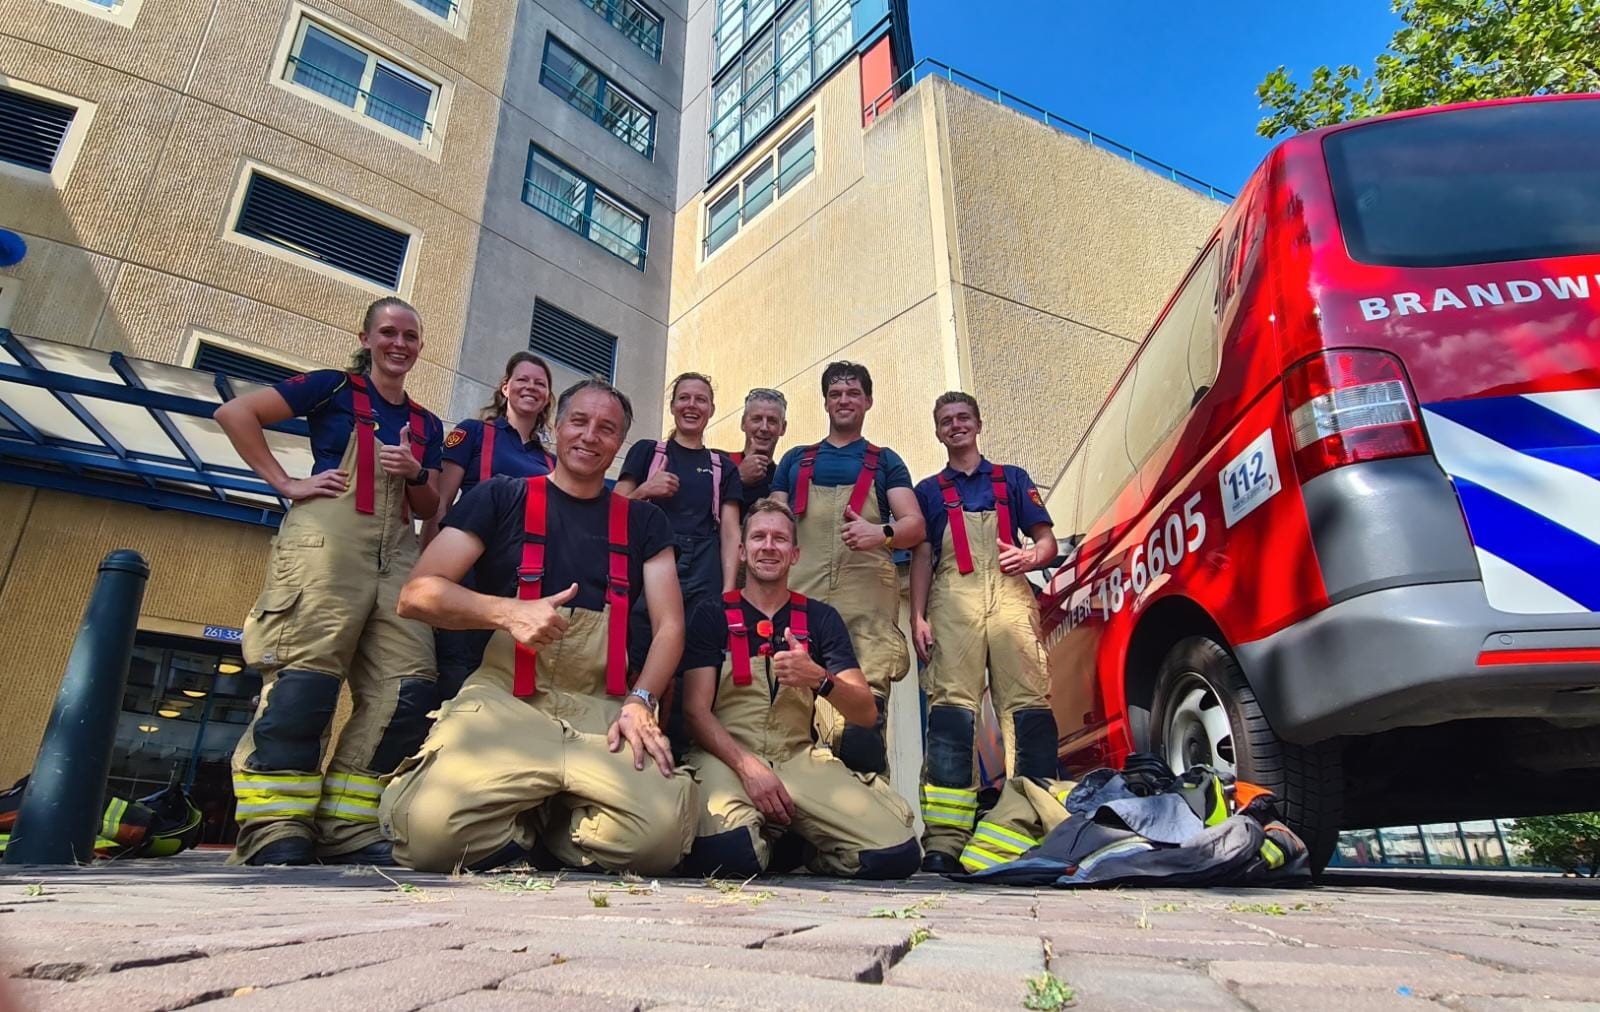 Brandweercollega’s beklimmen flatgebouw voor goede doel